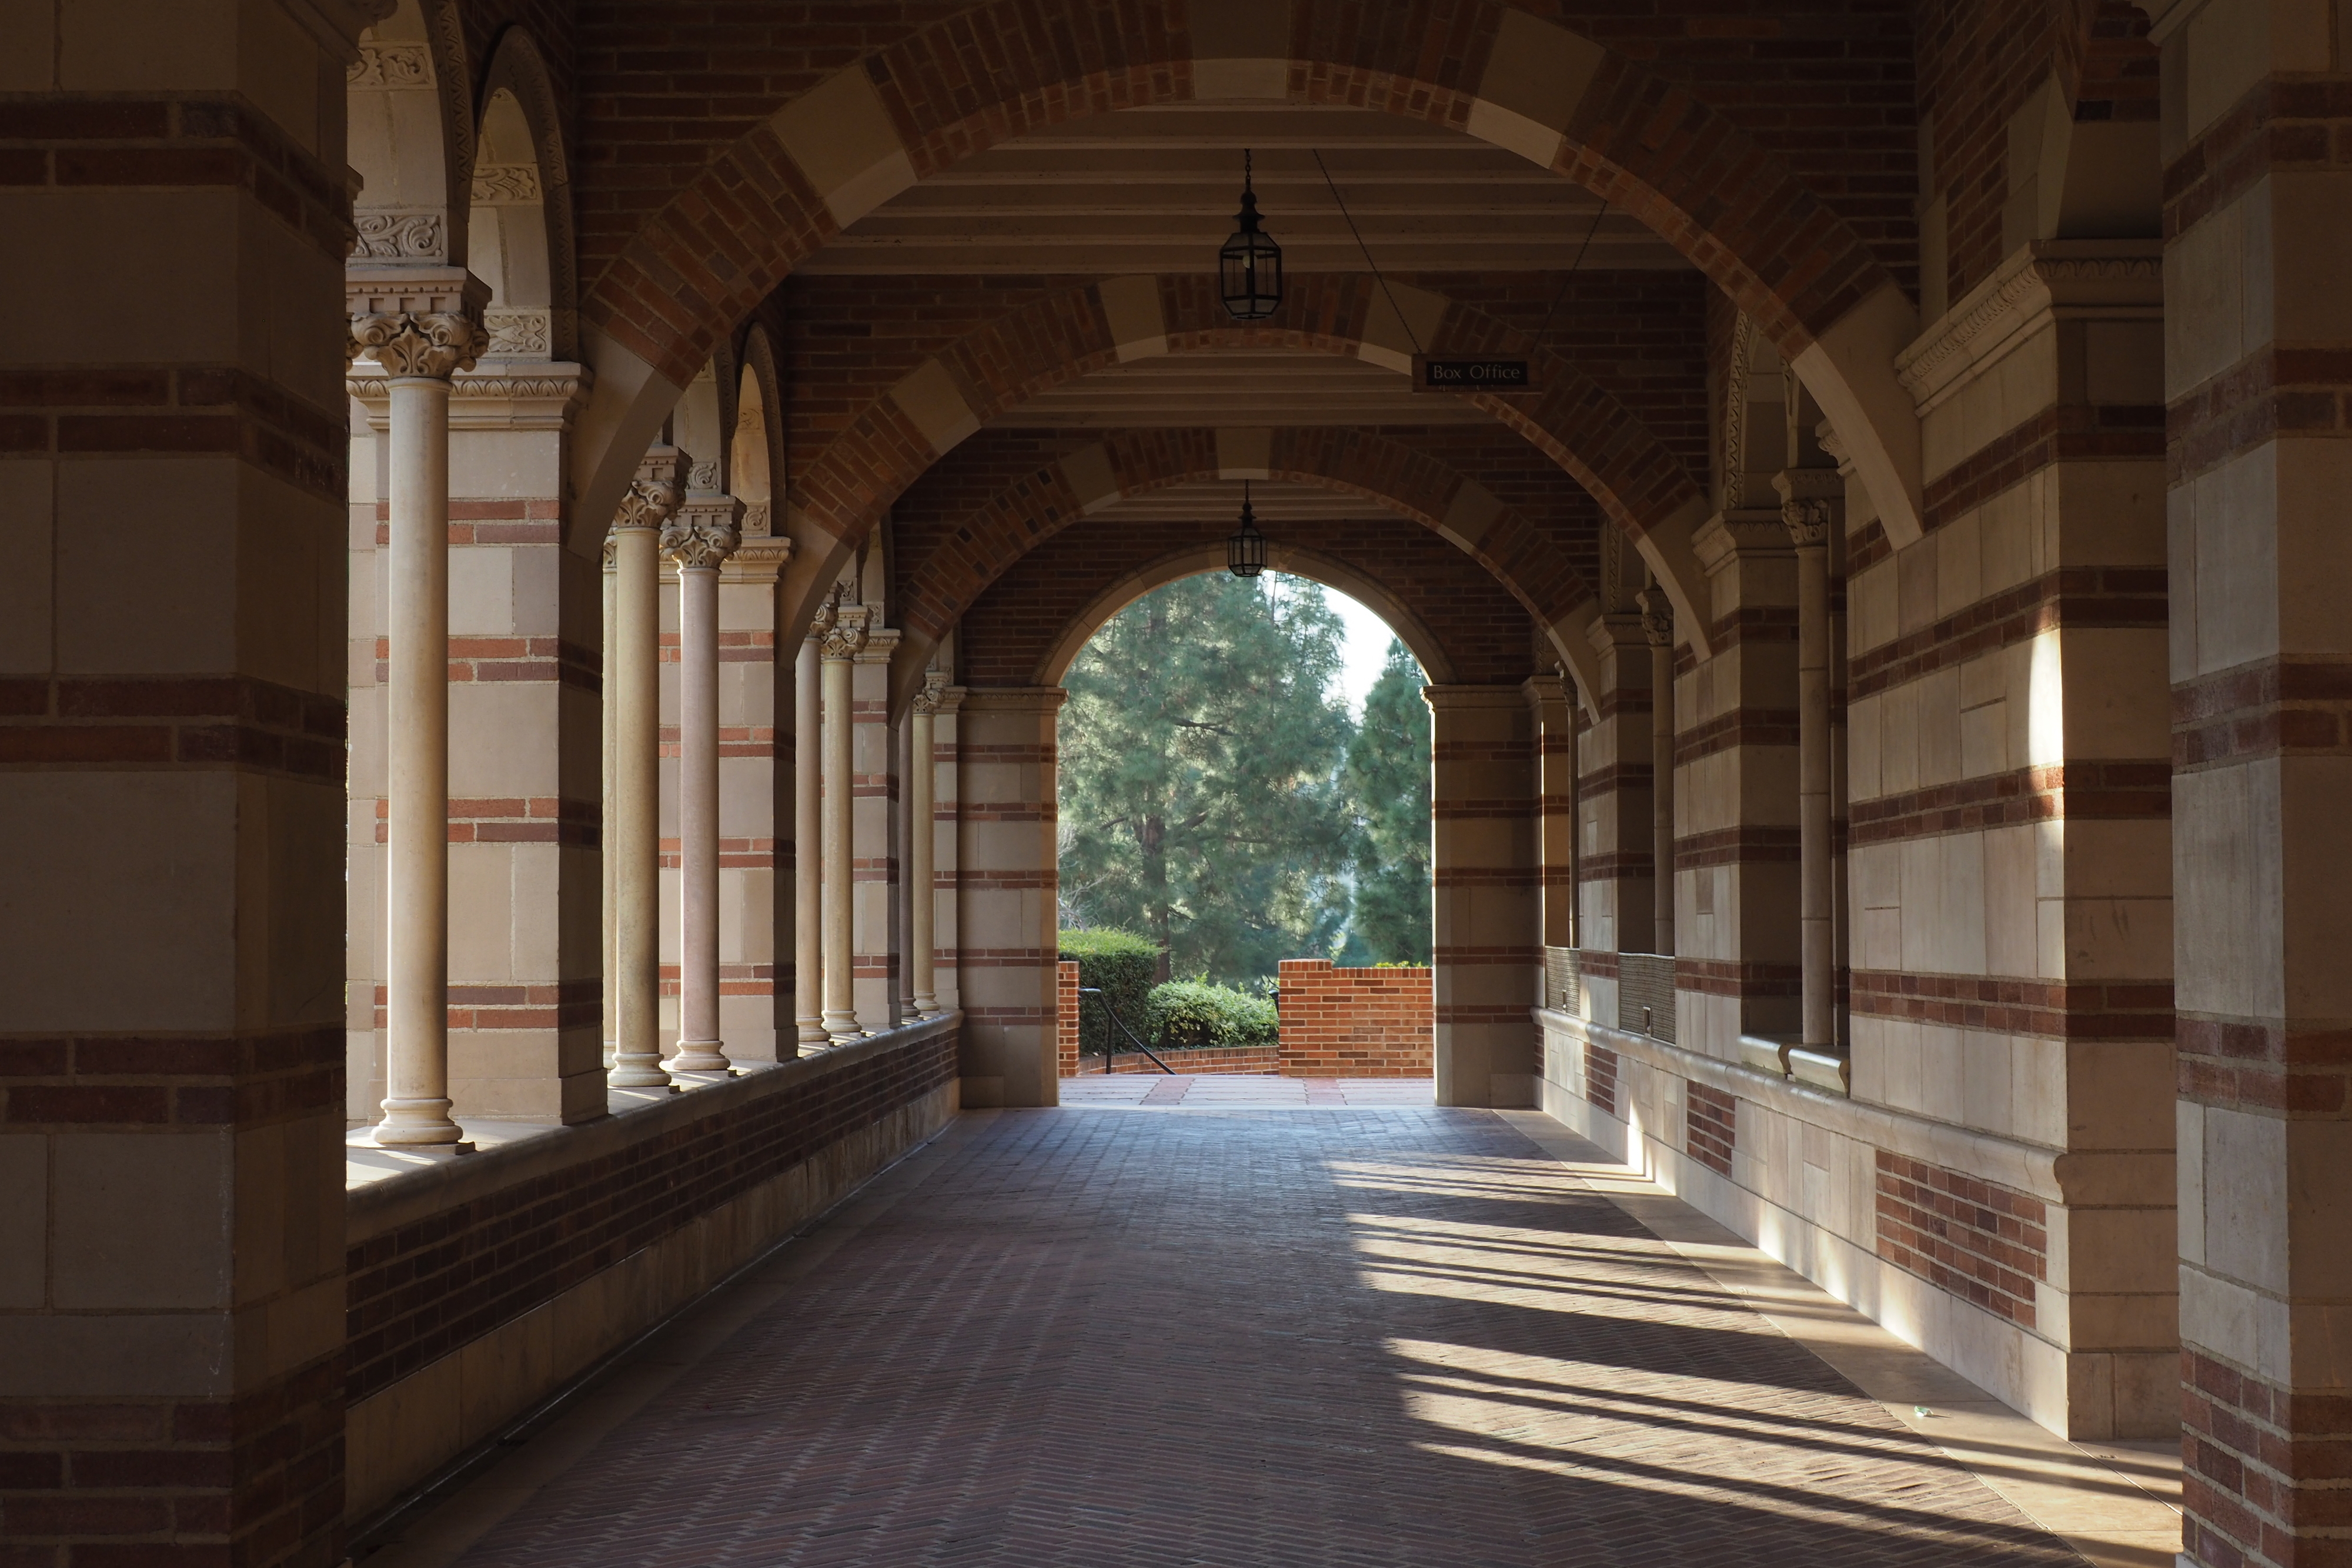 Exterior corridor of college building